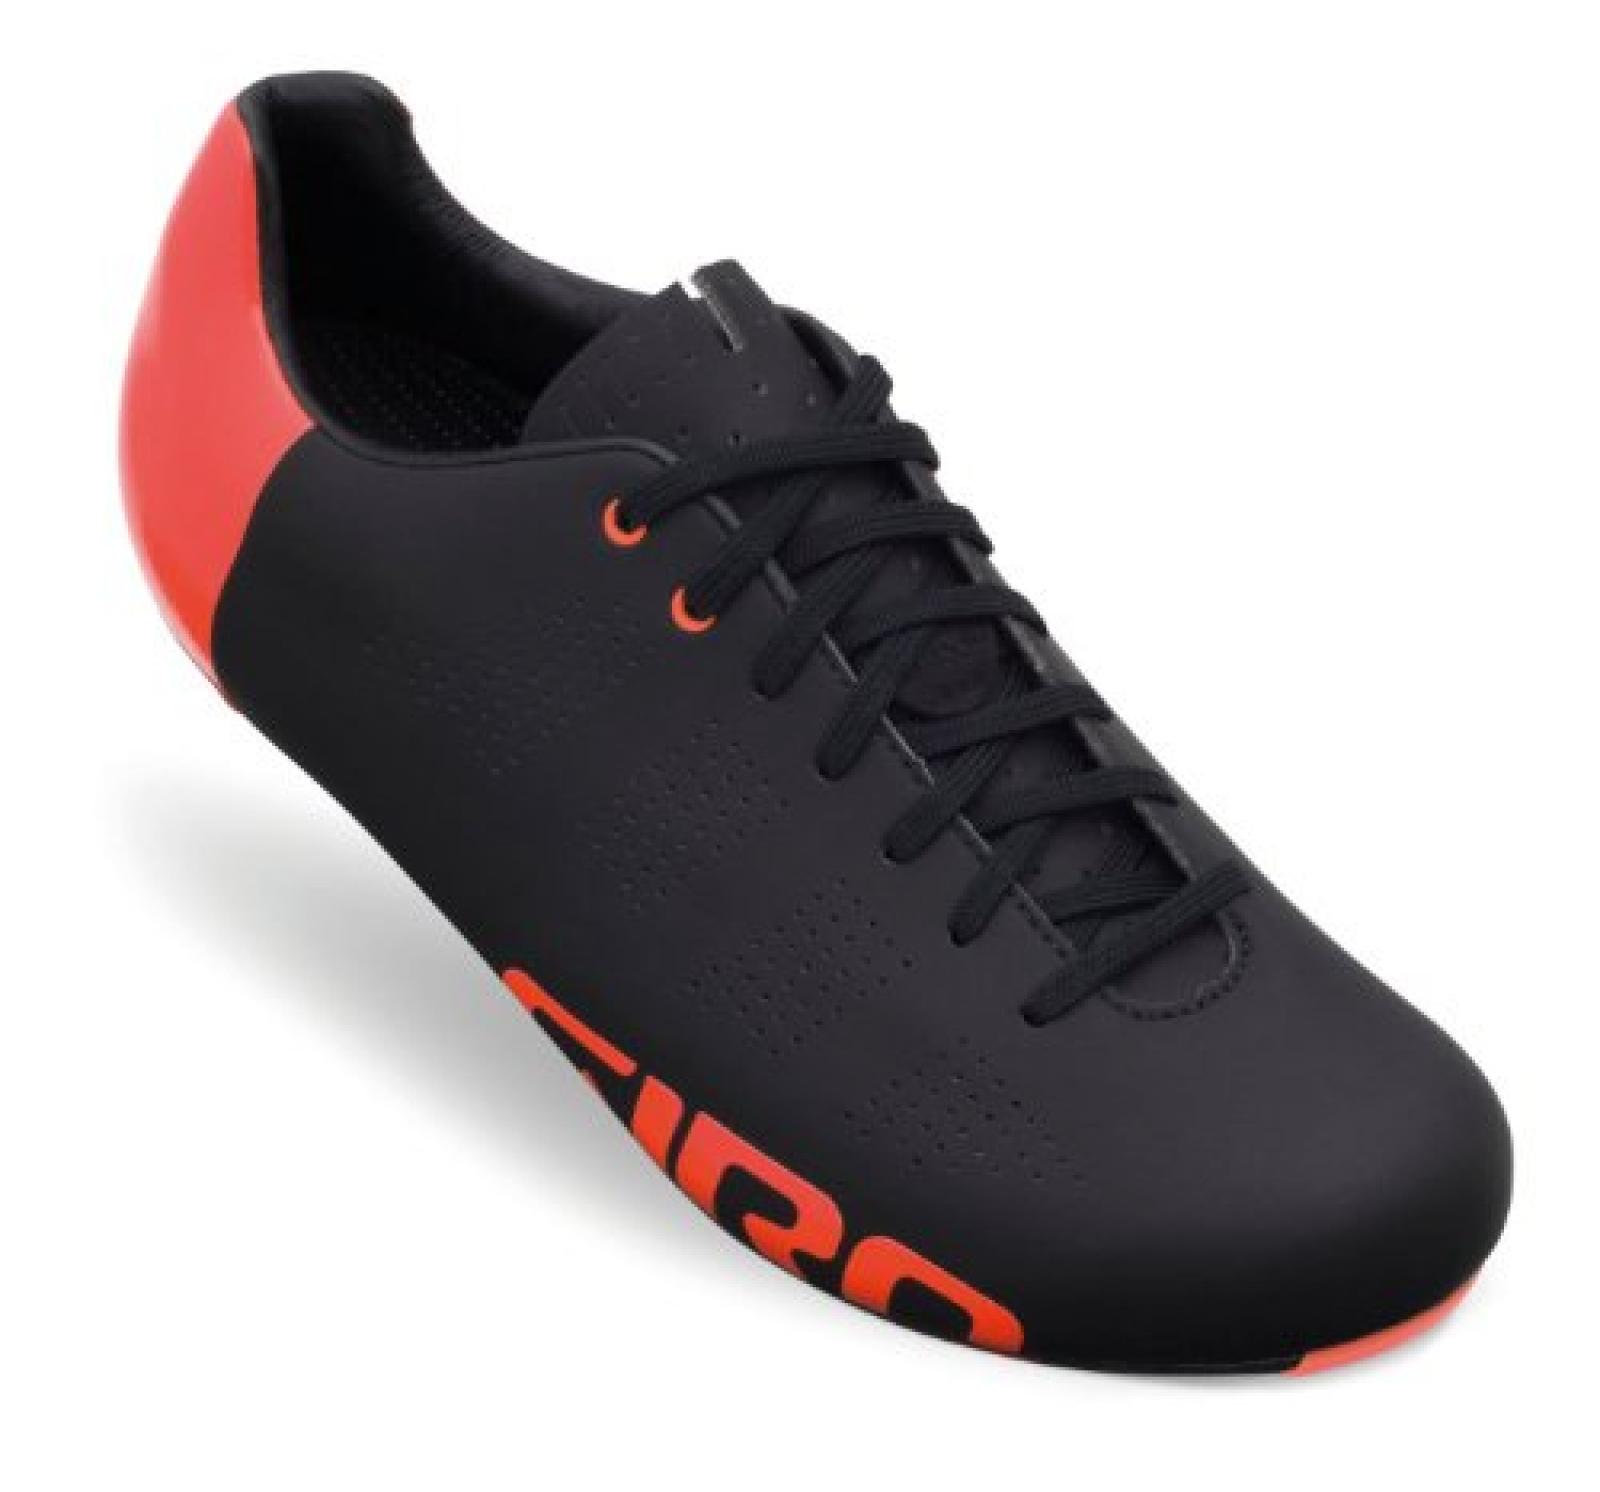 Giro Empire ACC Rennrad Fahrrad Schuhe schwarz/orange 2014: Größe: 41.5 